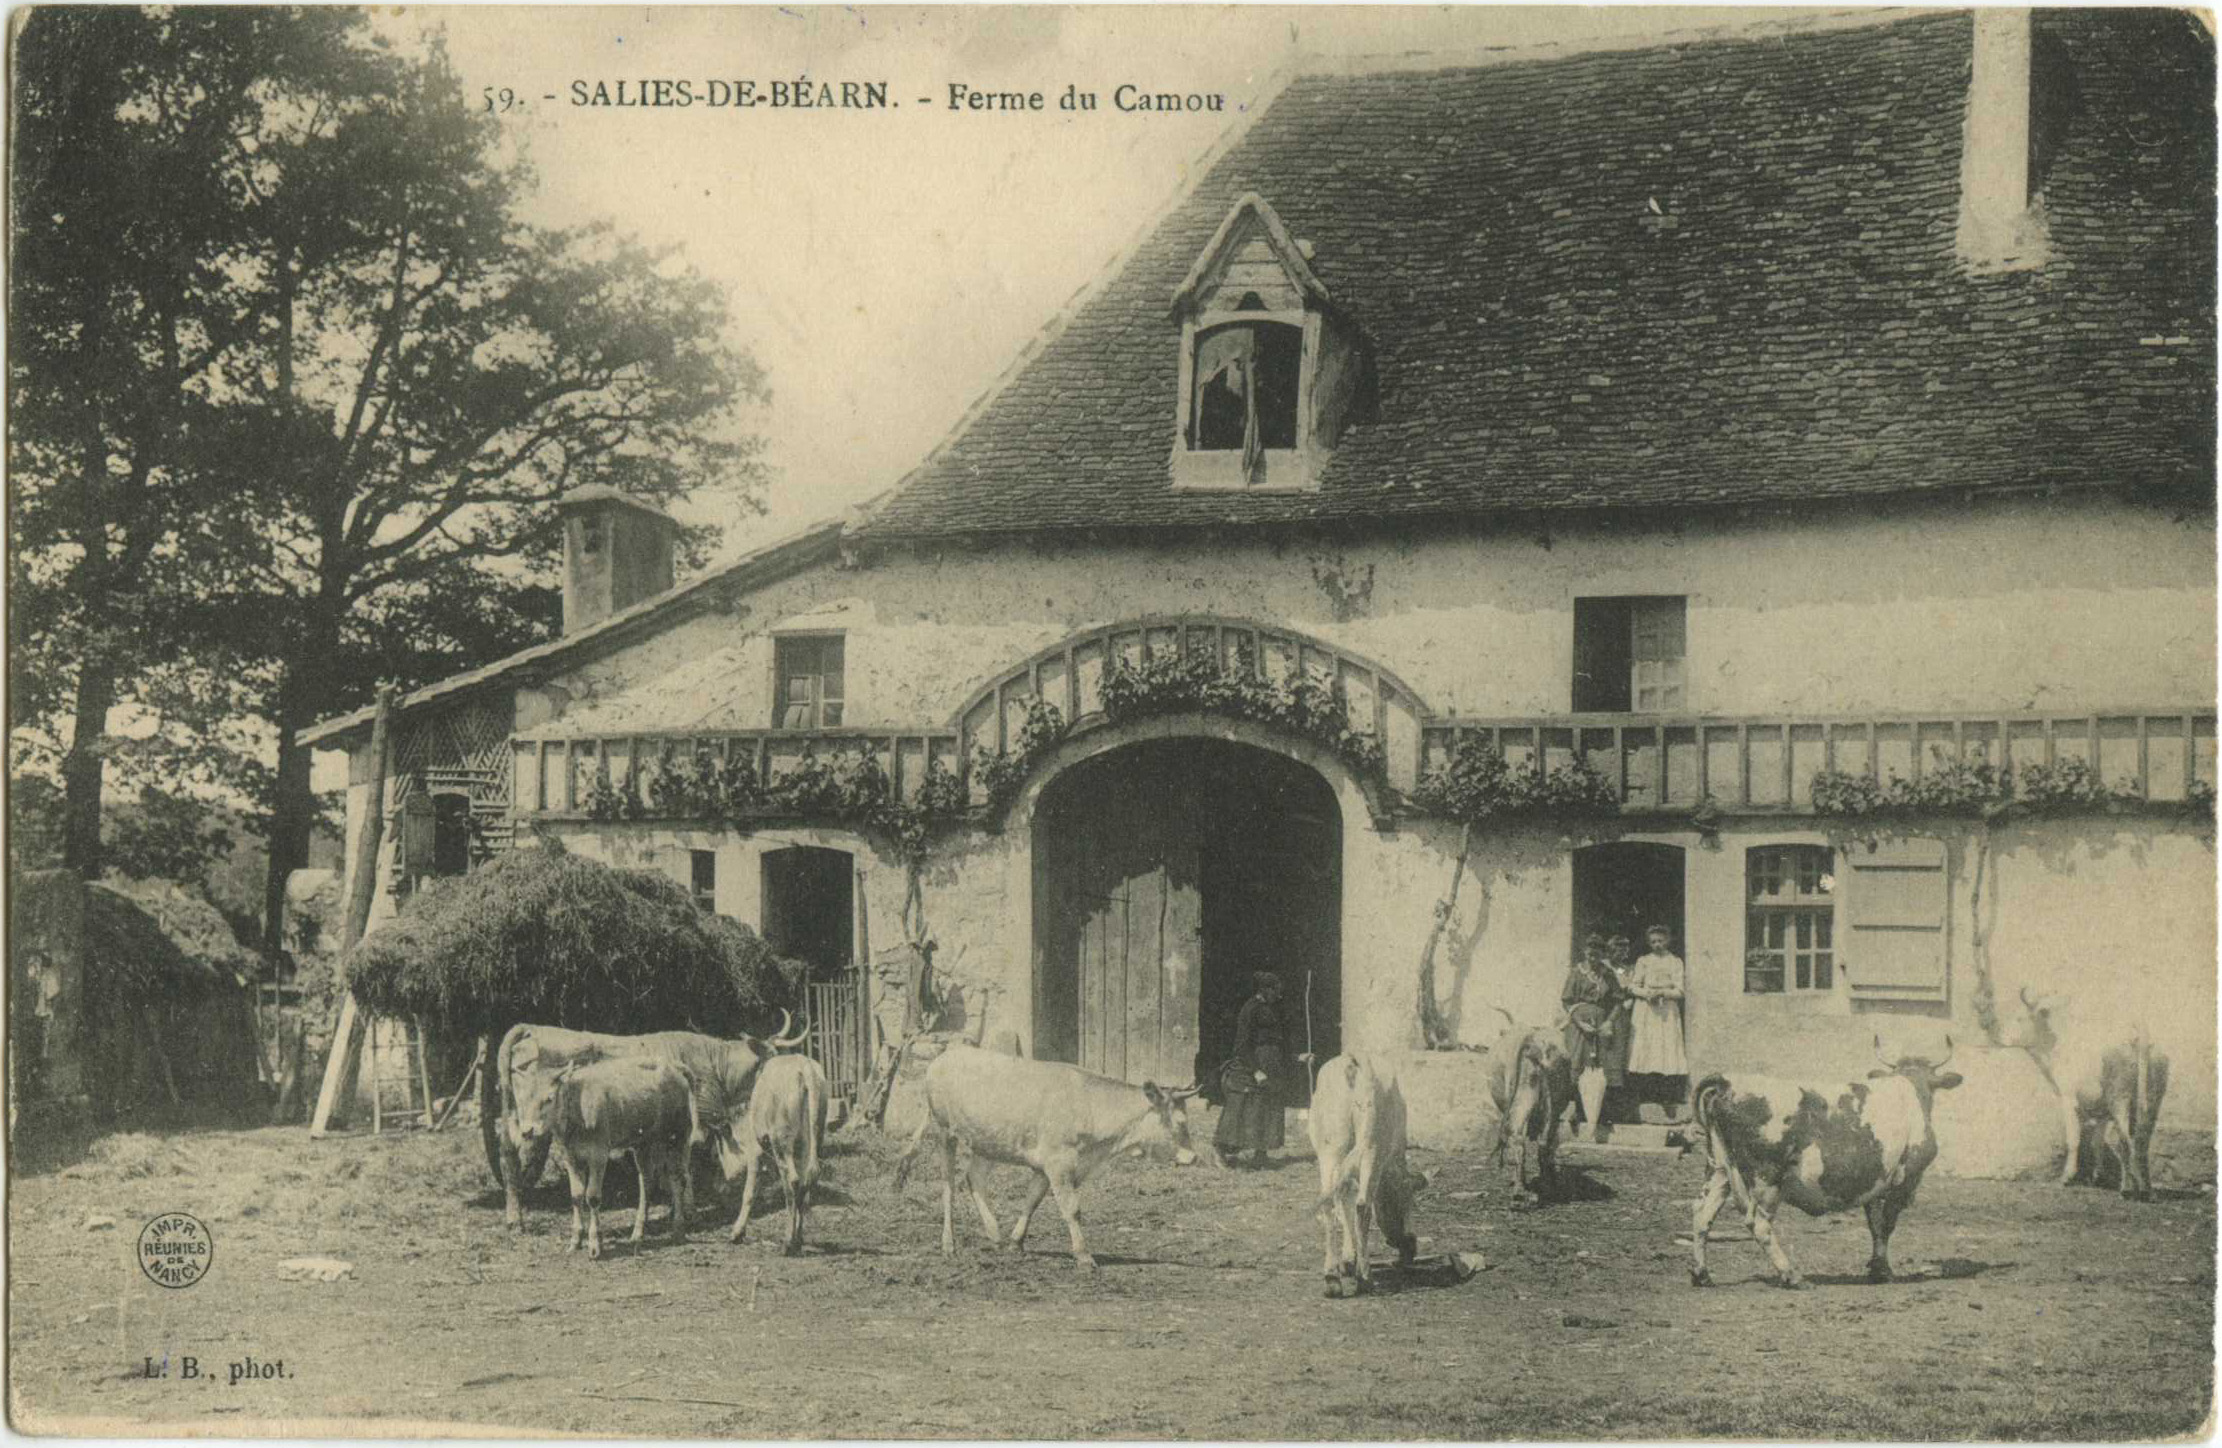 Salies-de-Béarn - Ferme du Camou